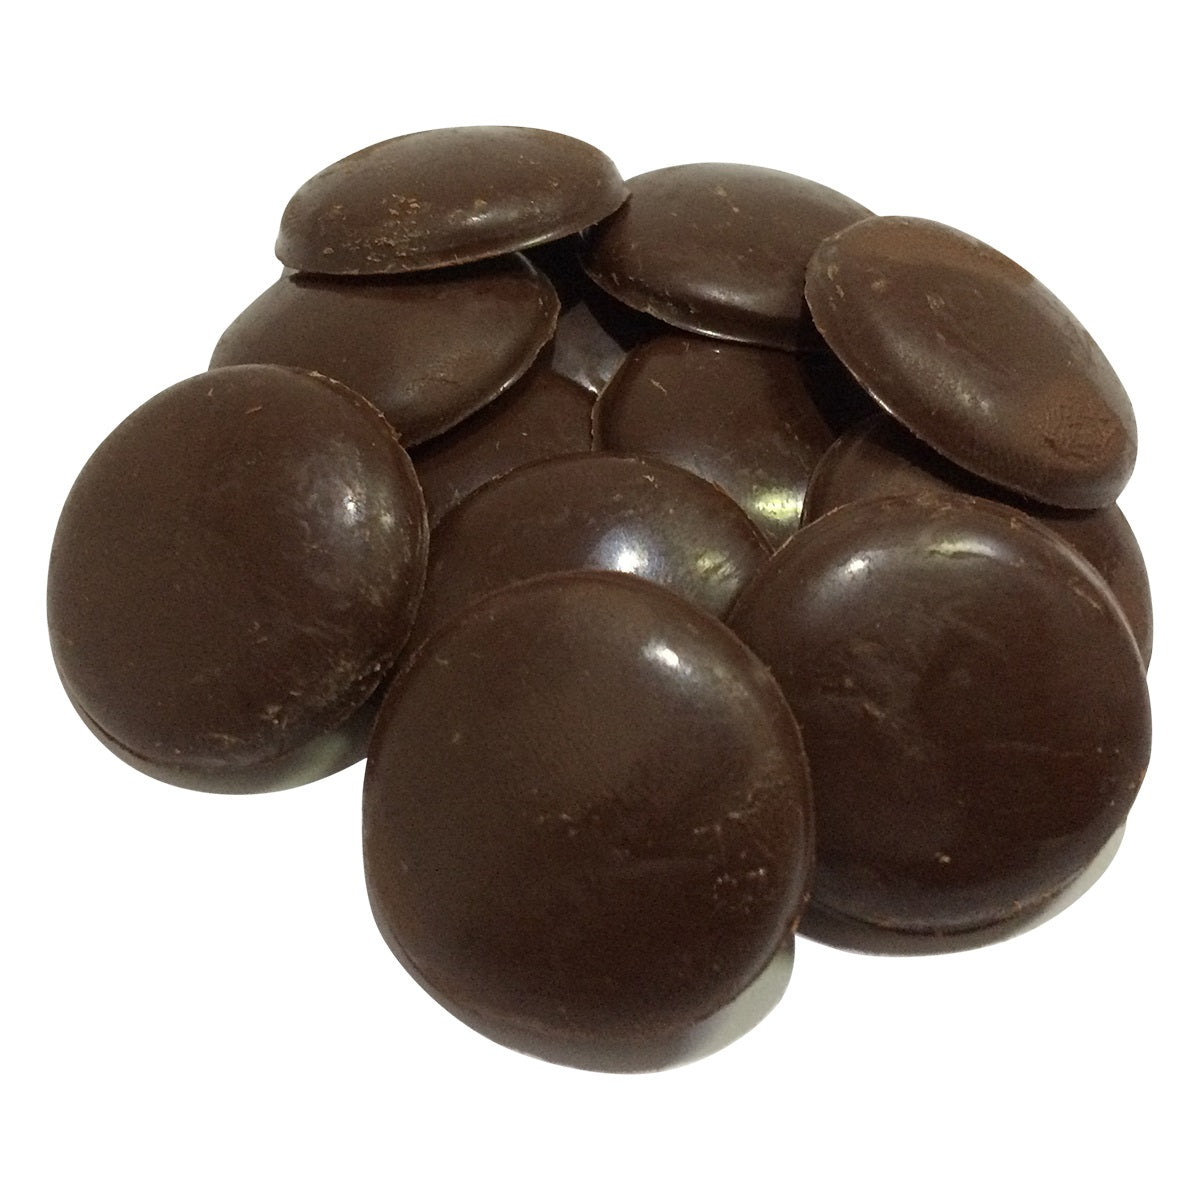 55% Bio-Schokolade gesüßt mit Panela - Waffeln